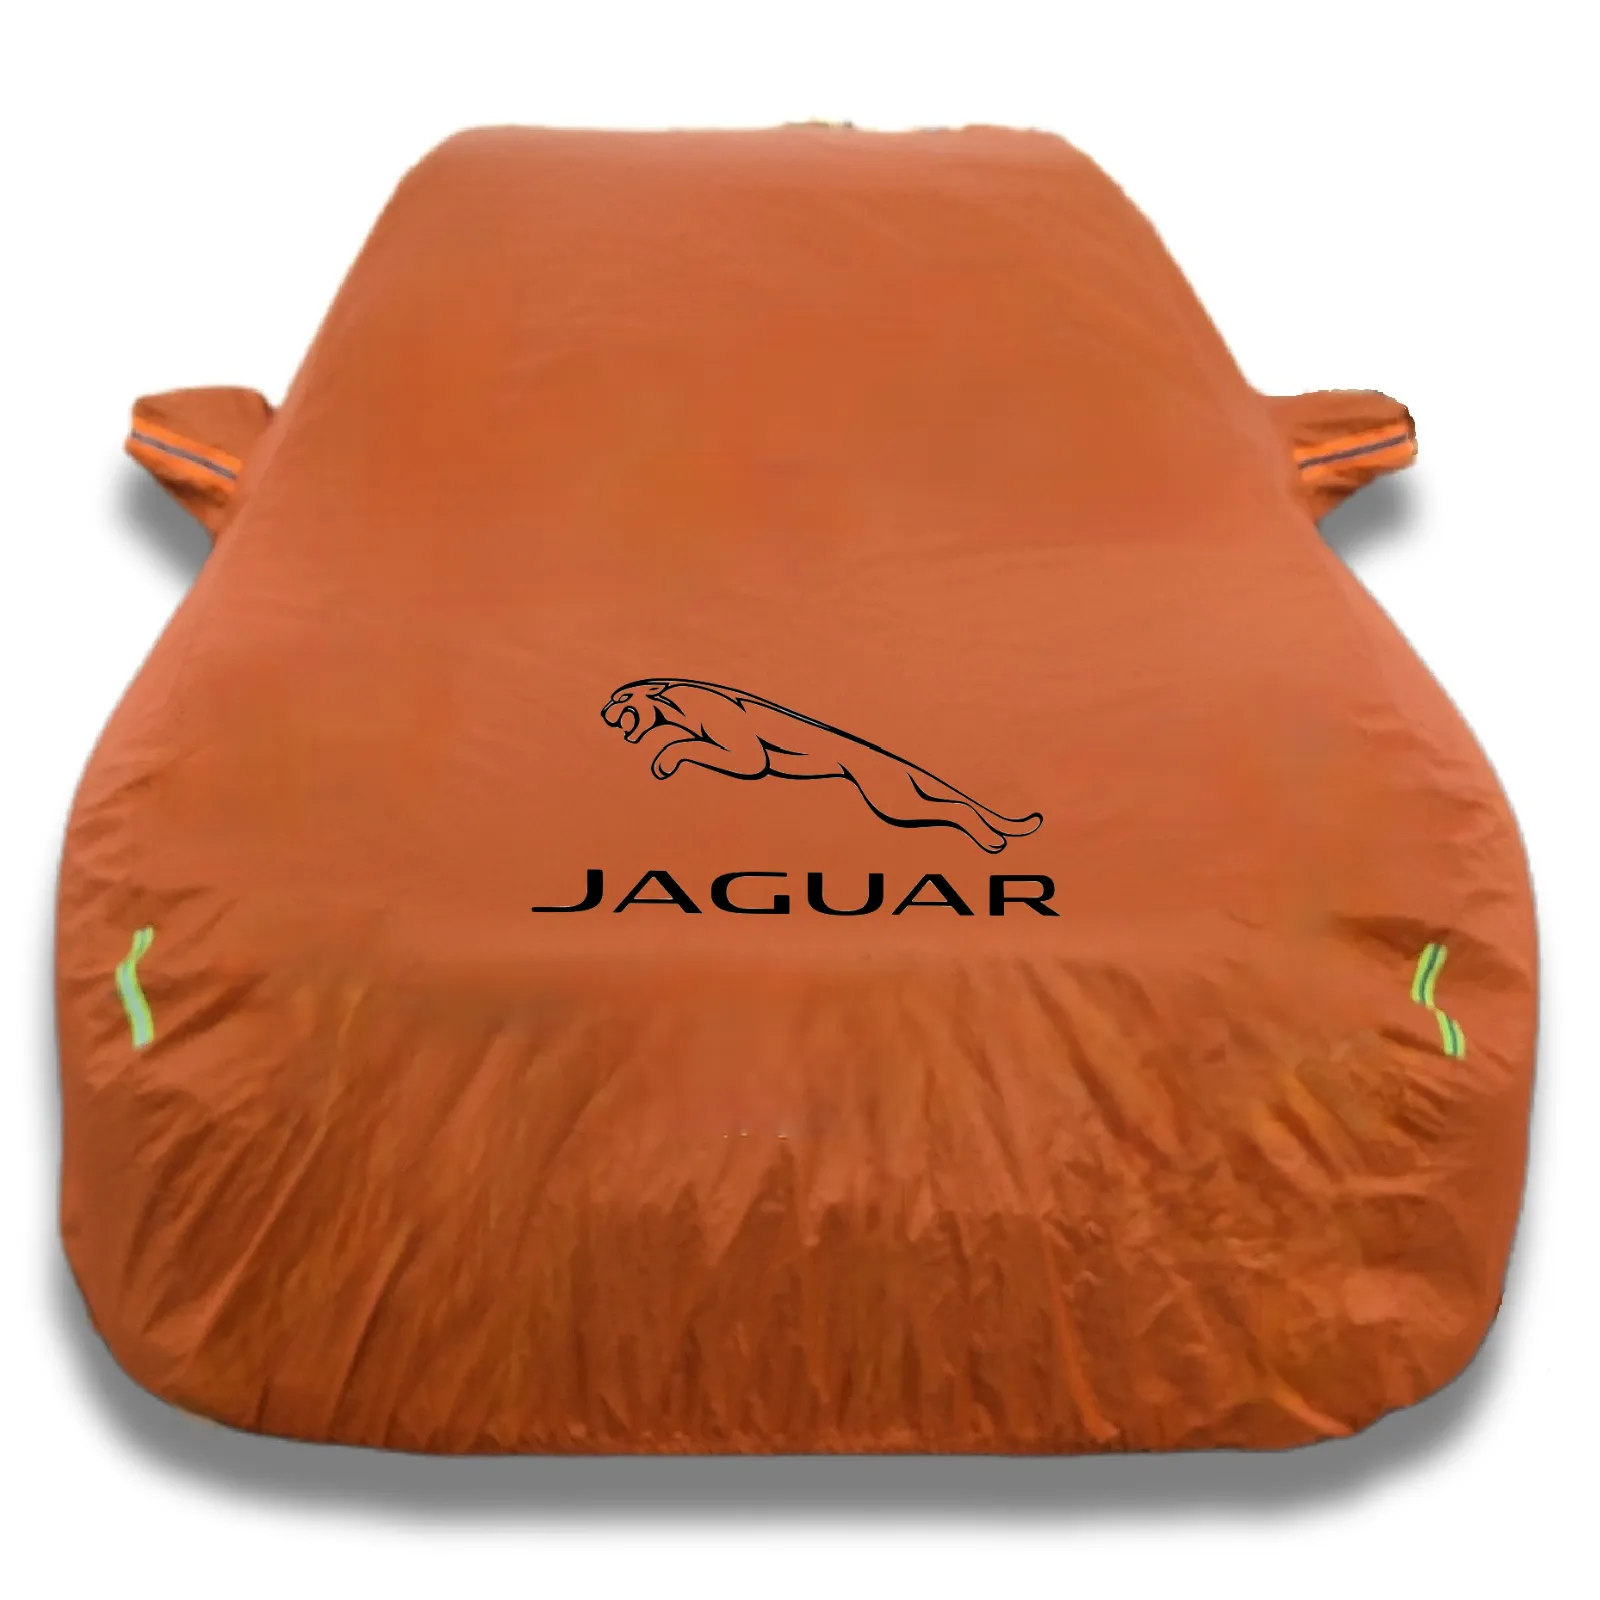 Jaguar serisi için özelleştirilmiş Oxford kumaş araba kılıfı, su geçirmez, güneş geçirmez ve UV dayanıklı, bir logo ekleme seçeneği ile.